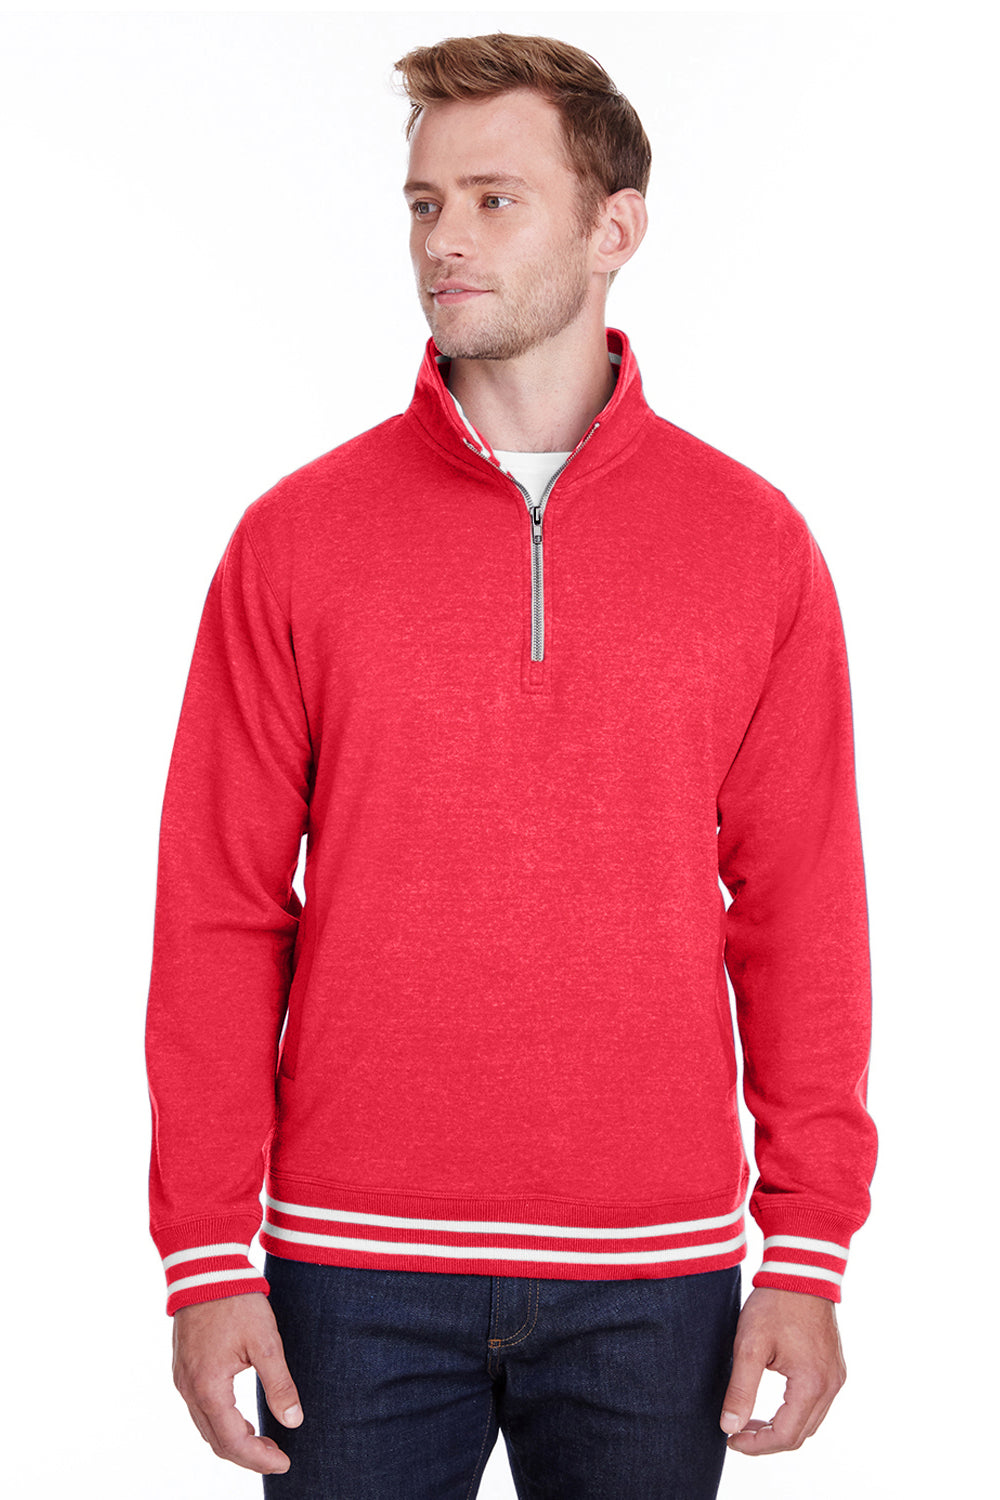 J America JA8650 Mens Relay Fleece 1/4 Zip Sweatshirt Red Front